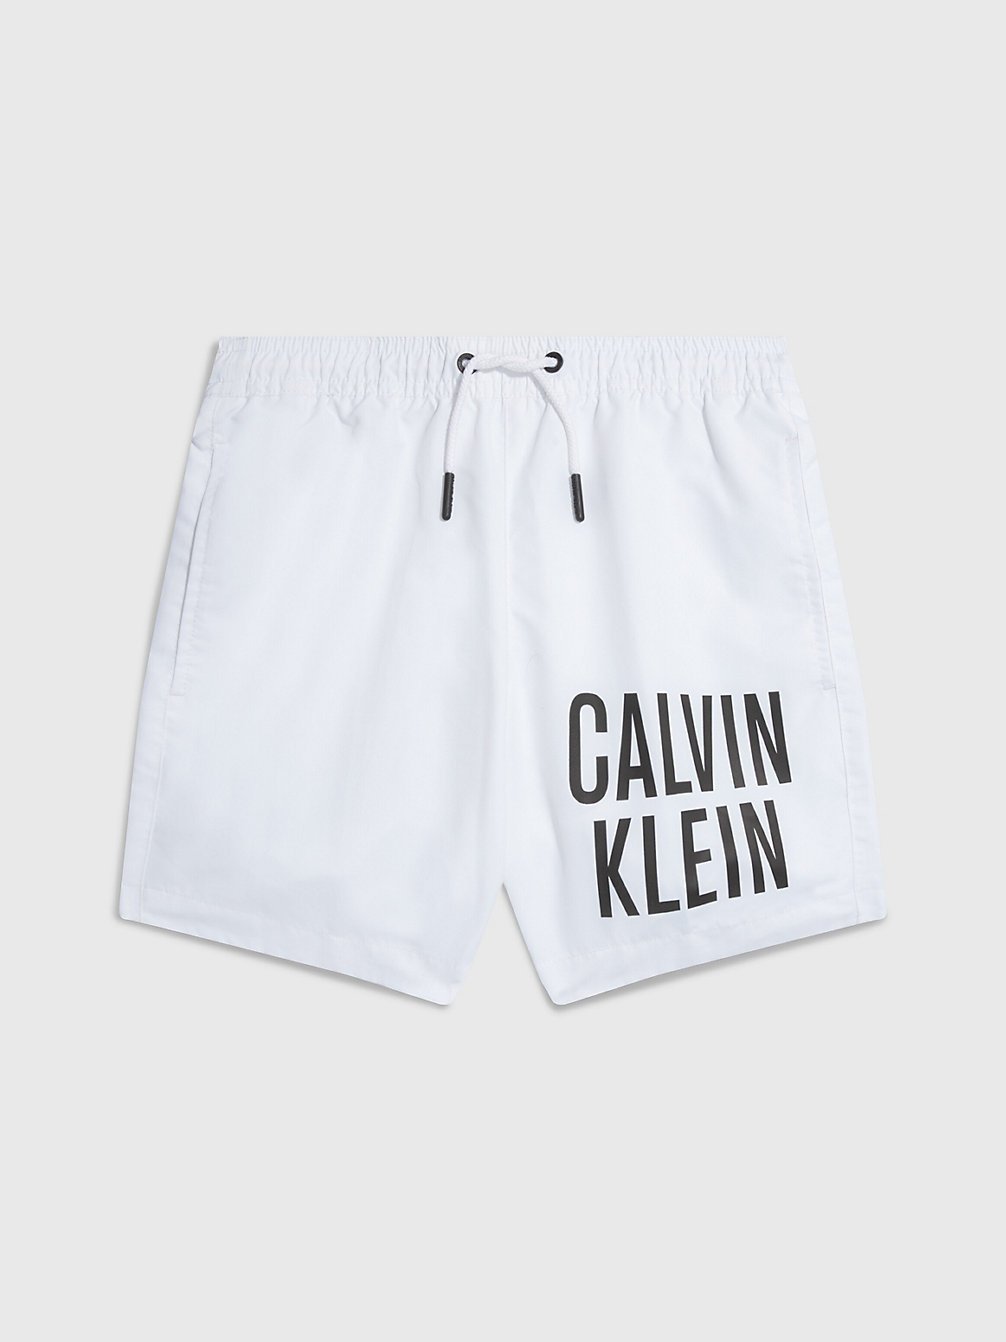 PVH CLASSIC WHITE Badehose Für Jungen - Intense Power undefined Jungen Calvin Klein